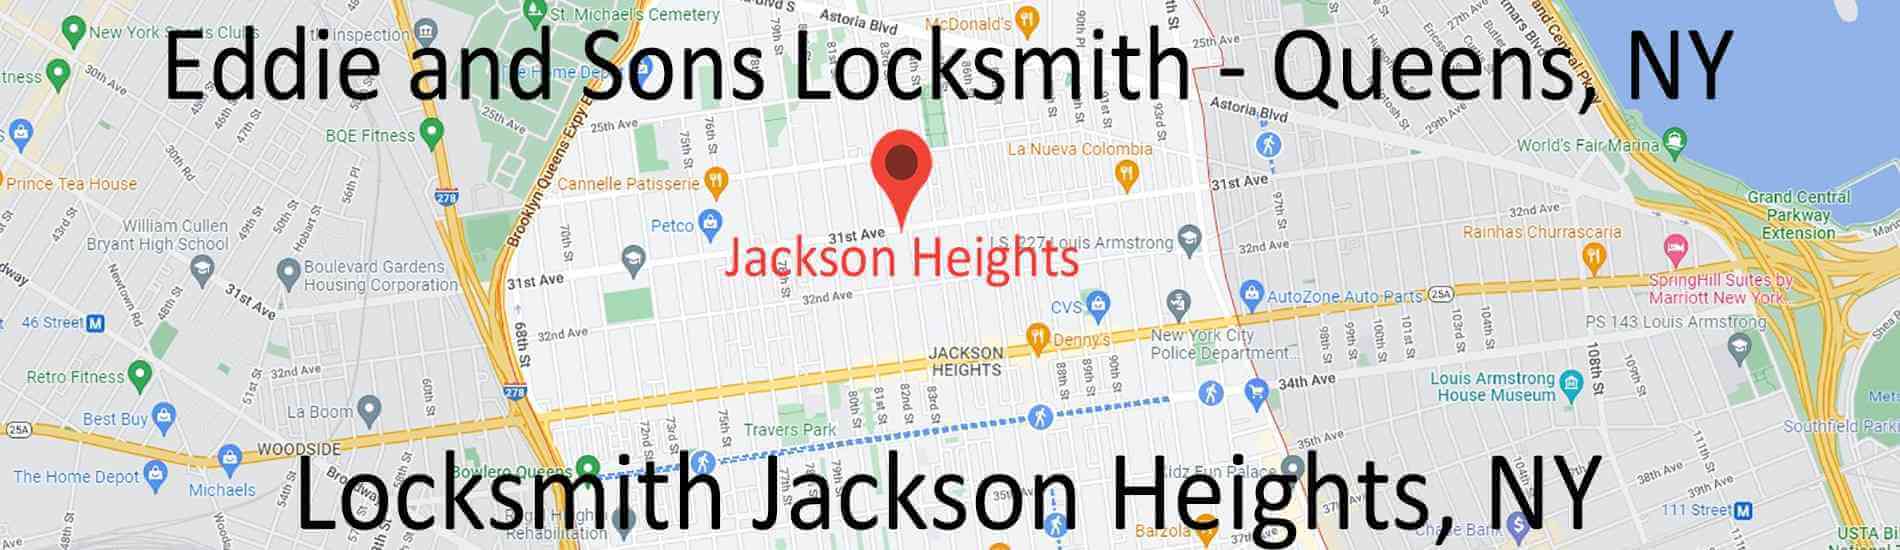 locksmith-jackson-heights